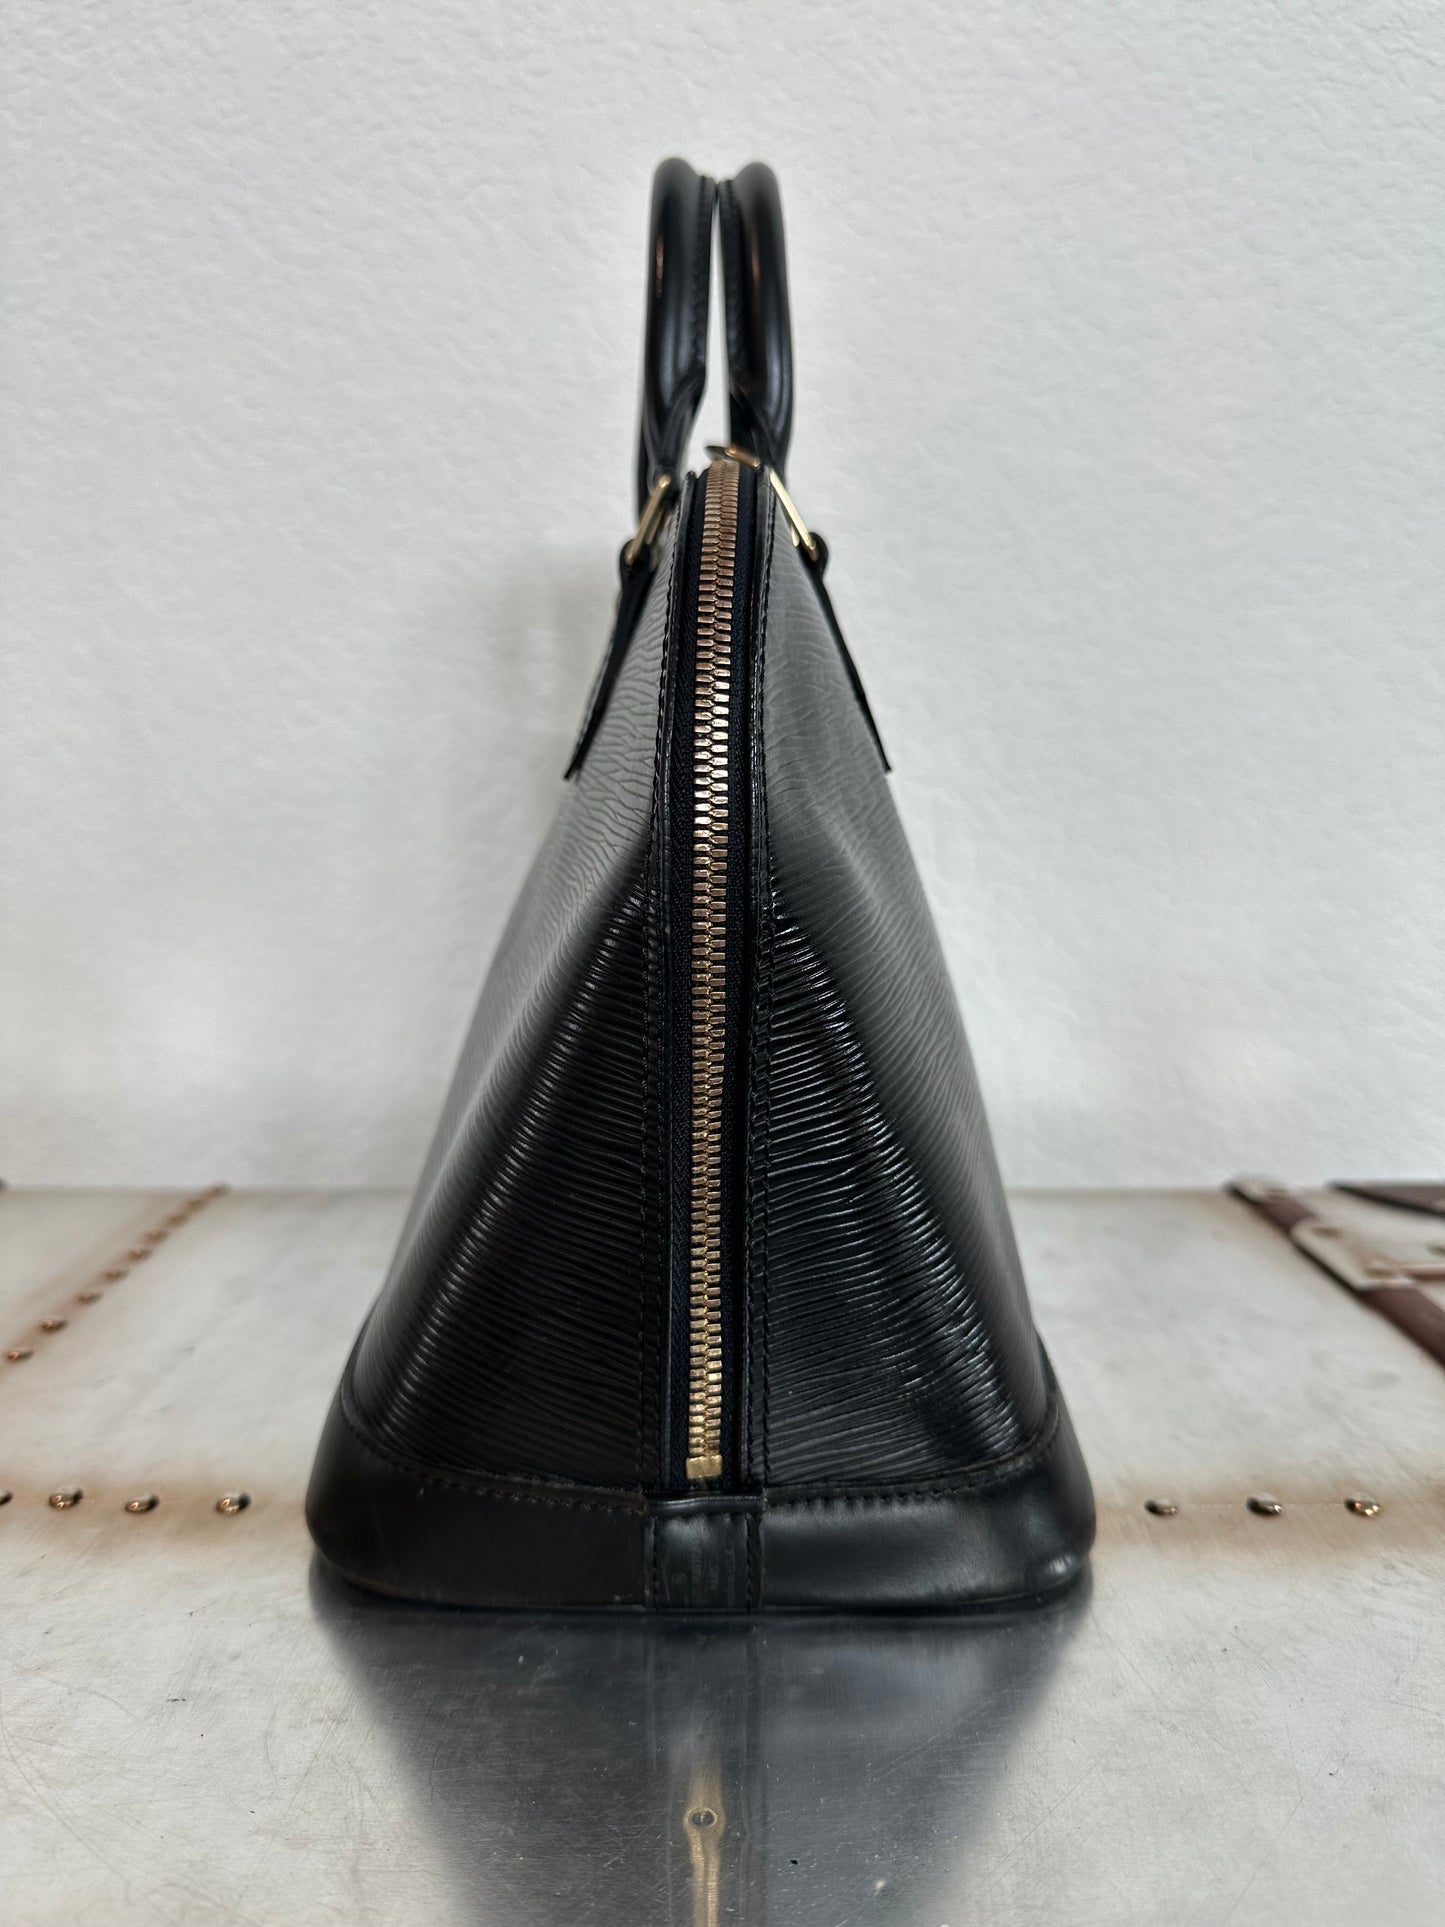 Pre-owned  Authentic Louis Vuitton Alma PM Epi Black Handbag